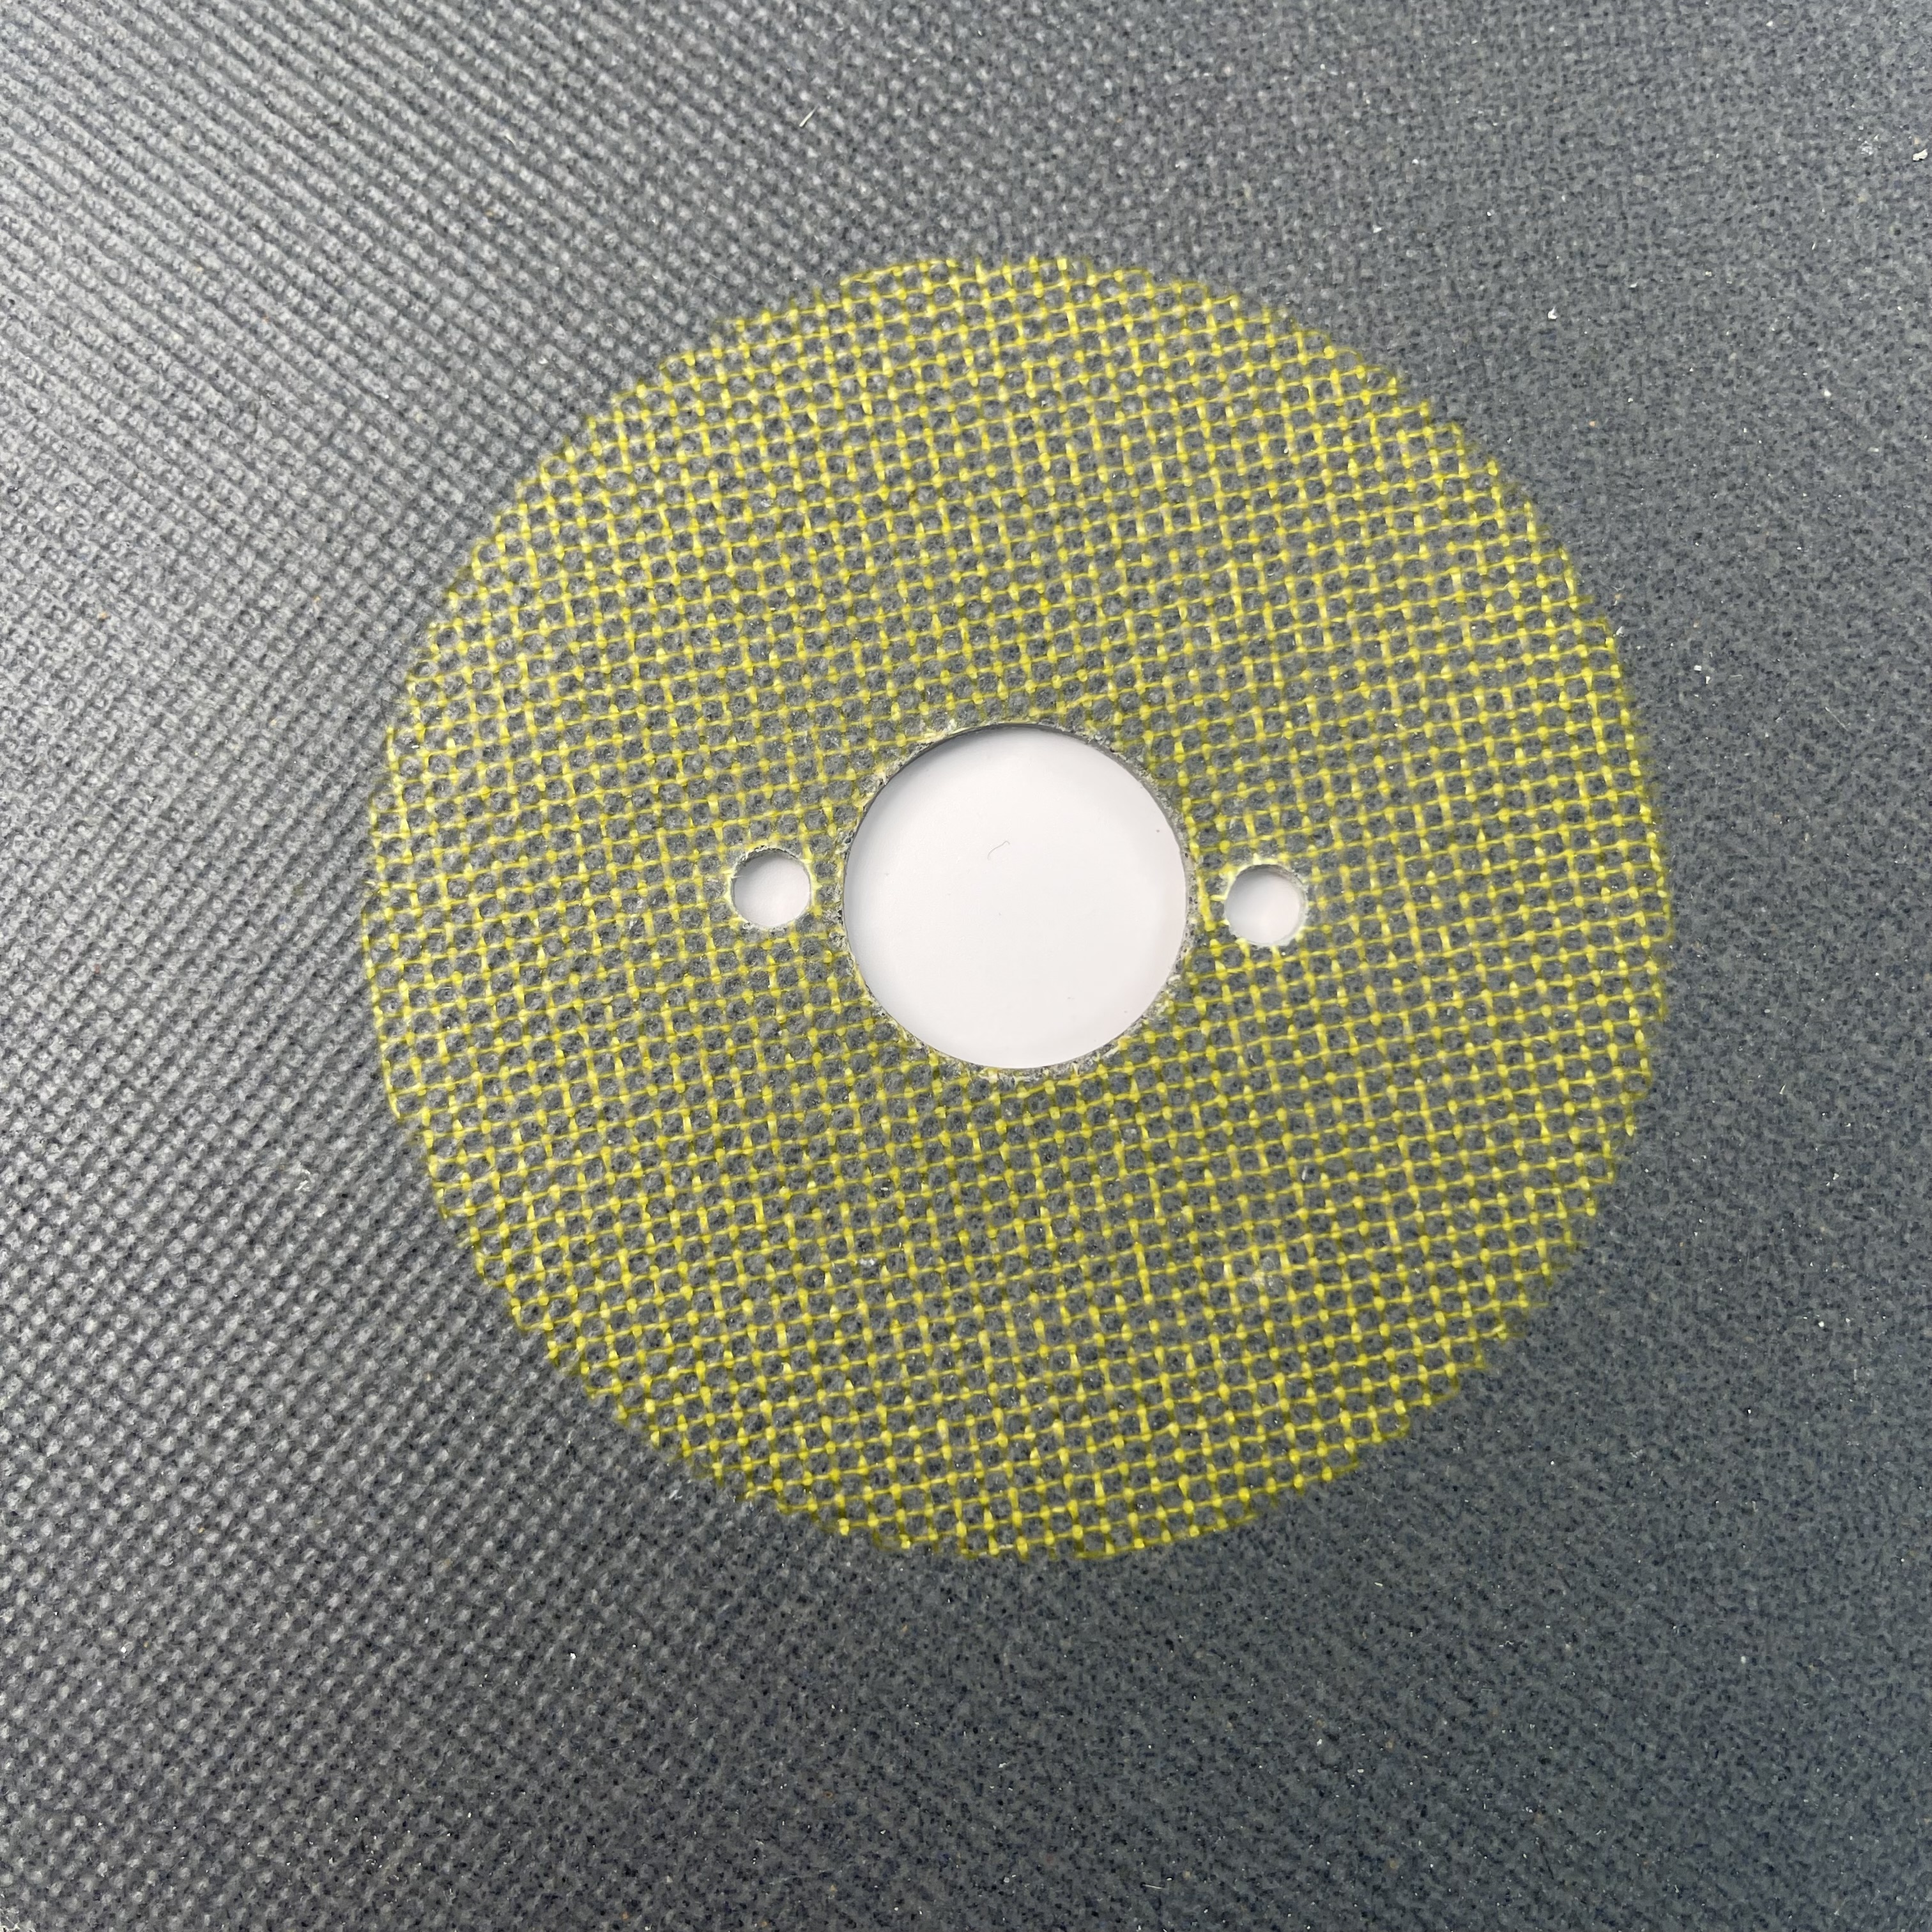  Roda portátil 8 do revestimento da soldadura do laser do moedor em x 3.0mm x 1 dentro para o alumínio